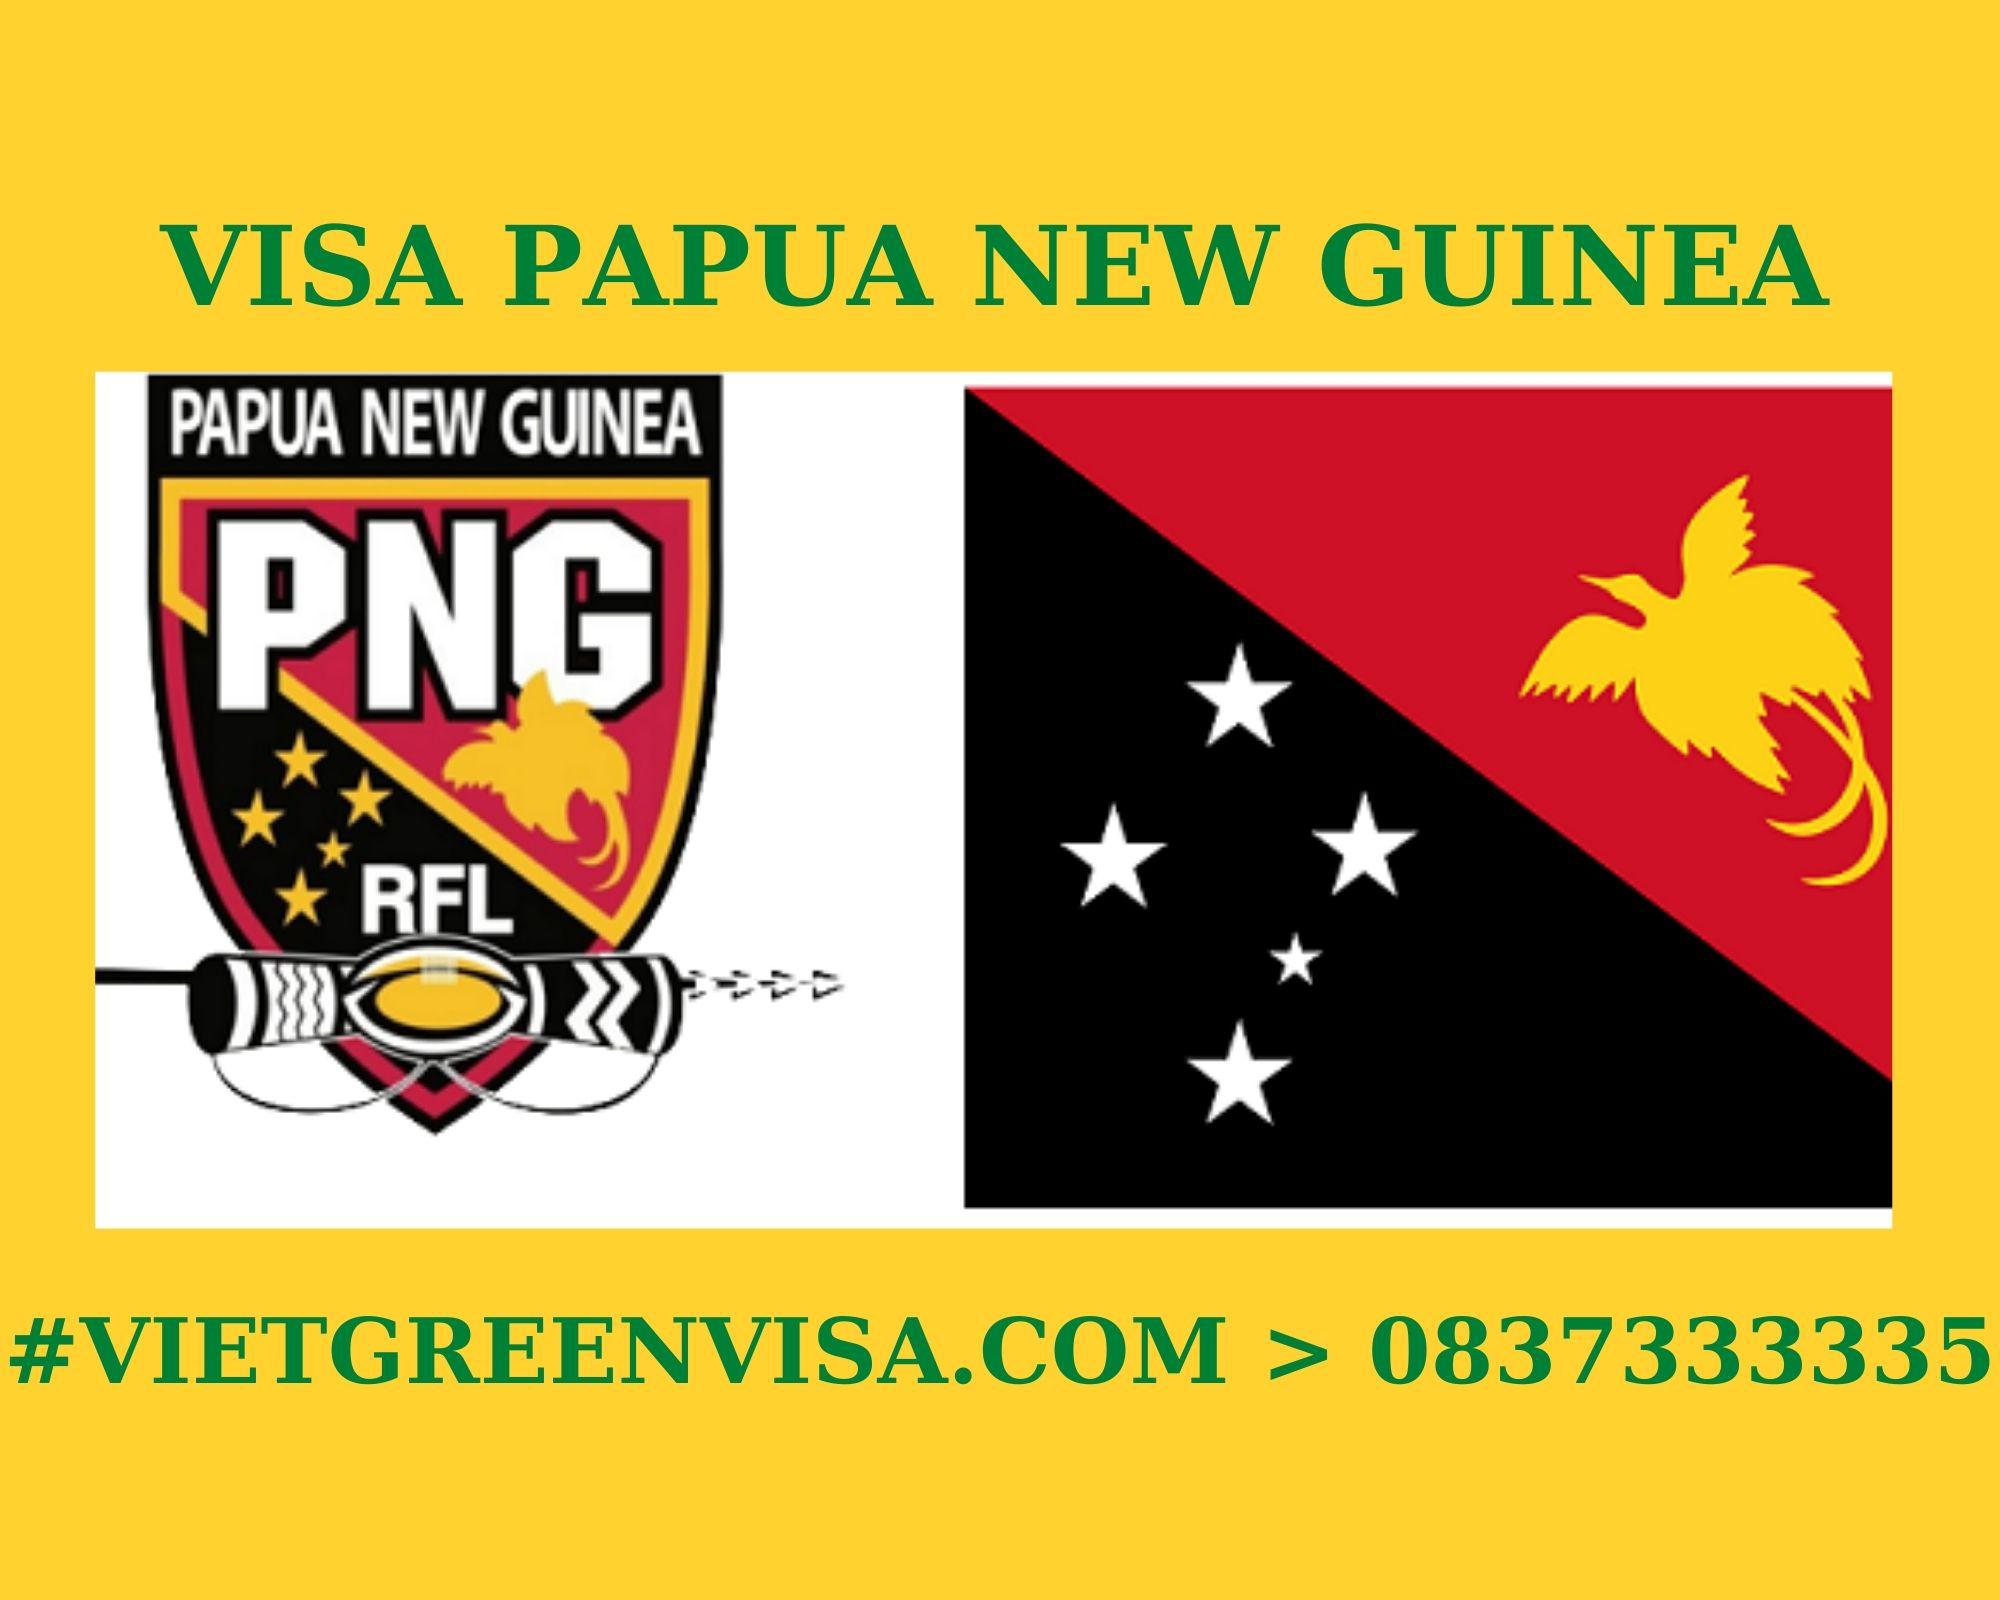 Làm Visa Papau New Guine thăm thân uy tín, nhanh chóng, giá rẻ